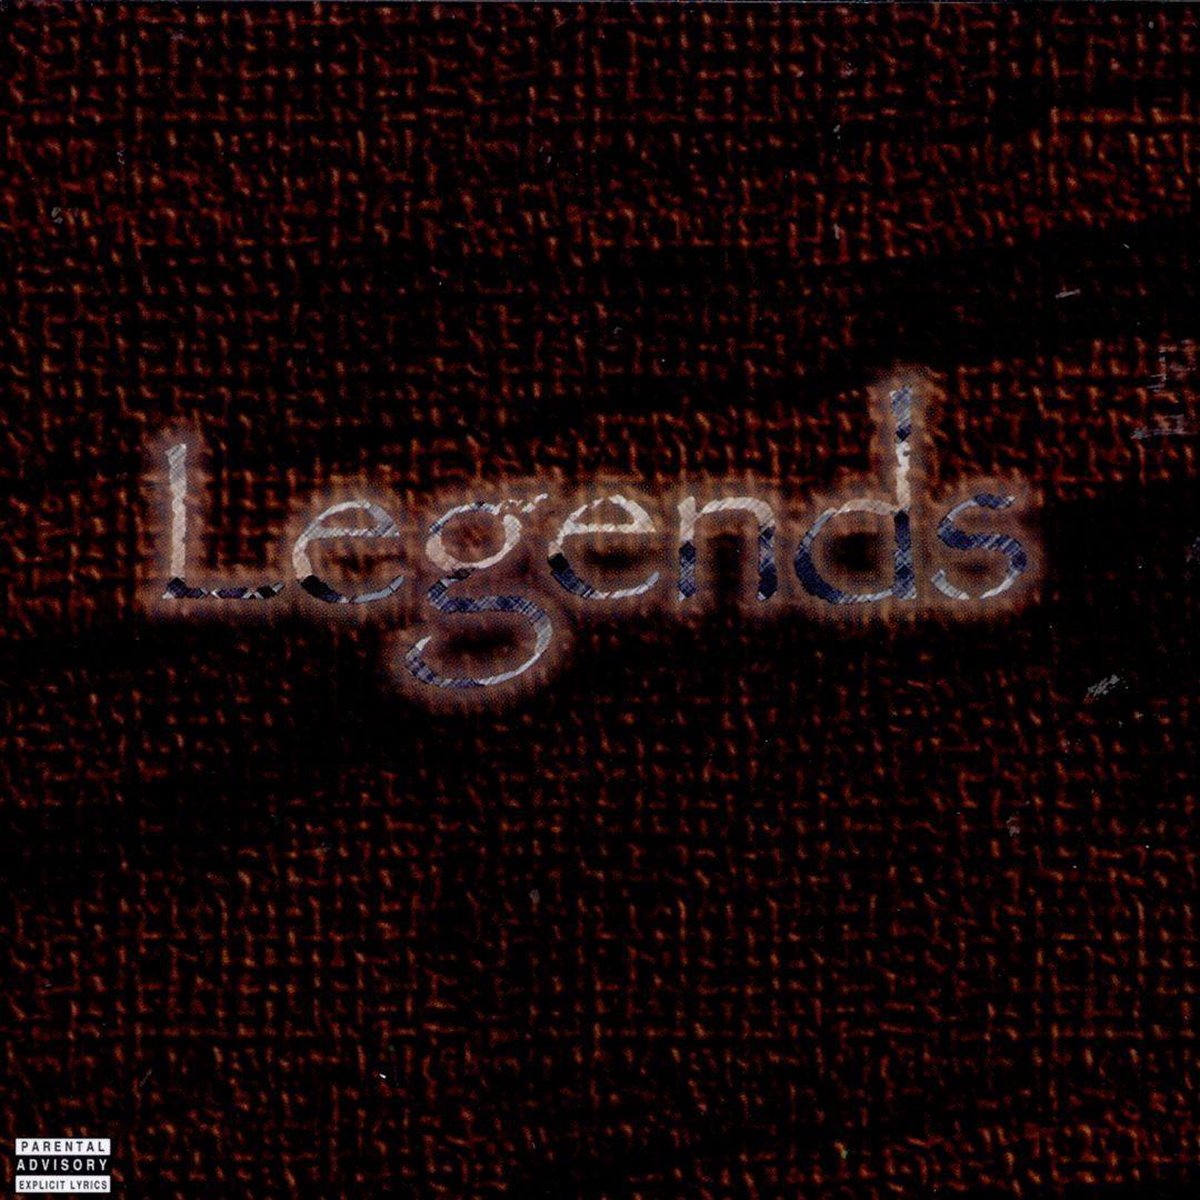 Legends - 2pac & Dr. Dre